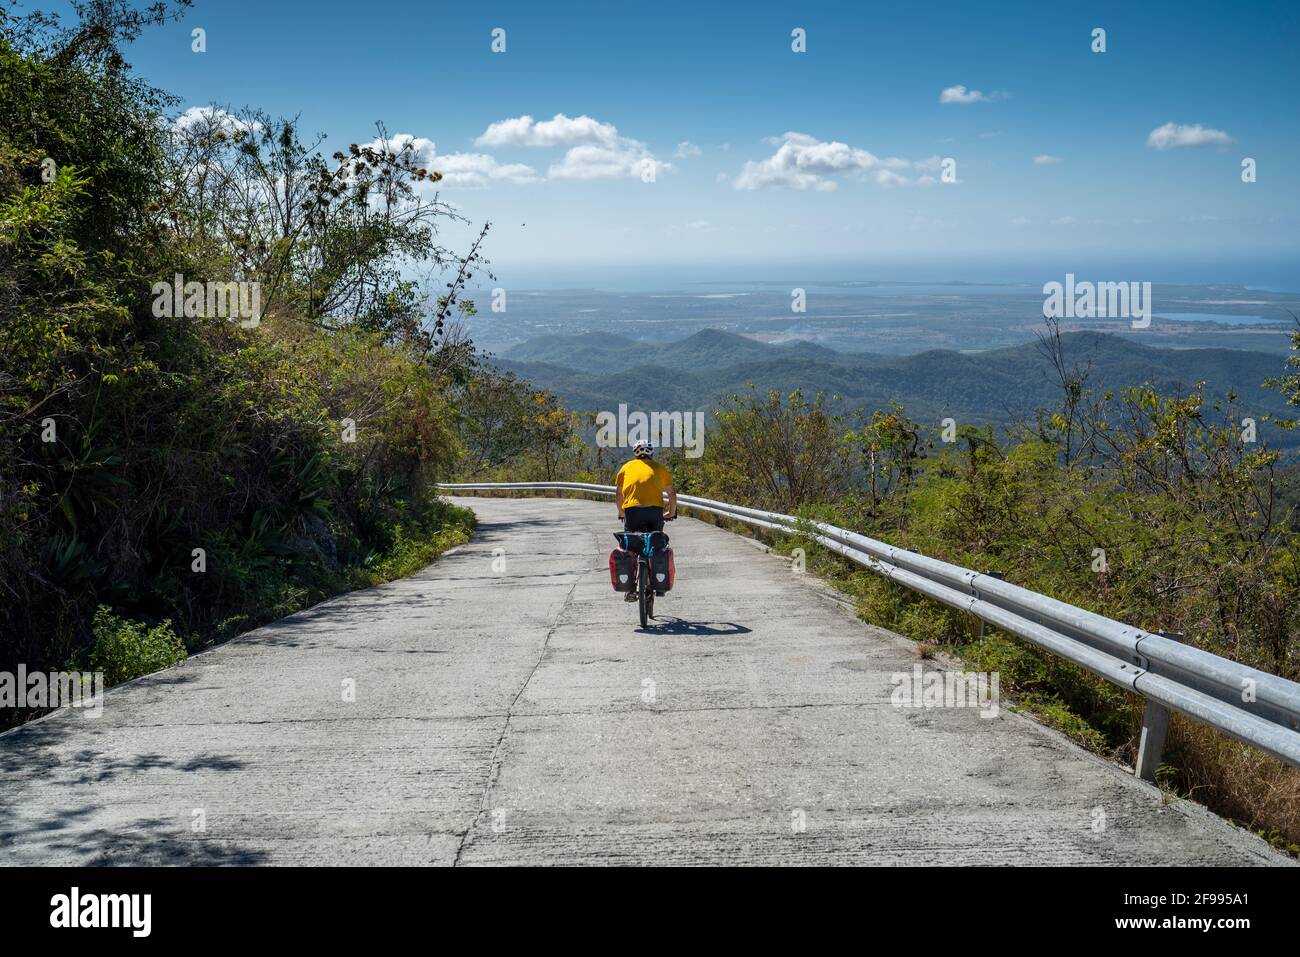 Bike tour in the Escambray Mountains from Topes de Collantes to Trinidad, Sancti Spiritus Province, Cuba Stock Photo